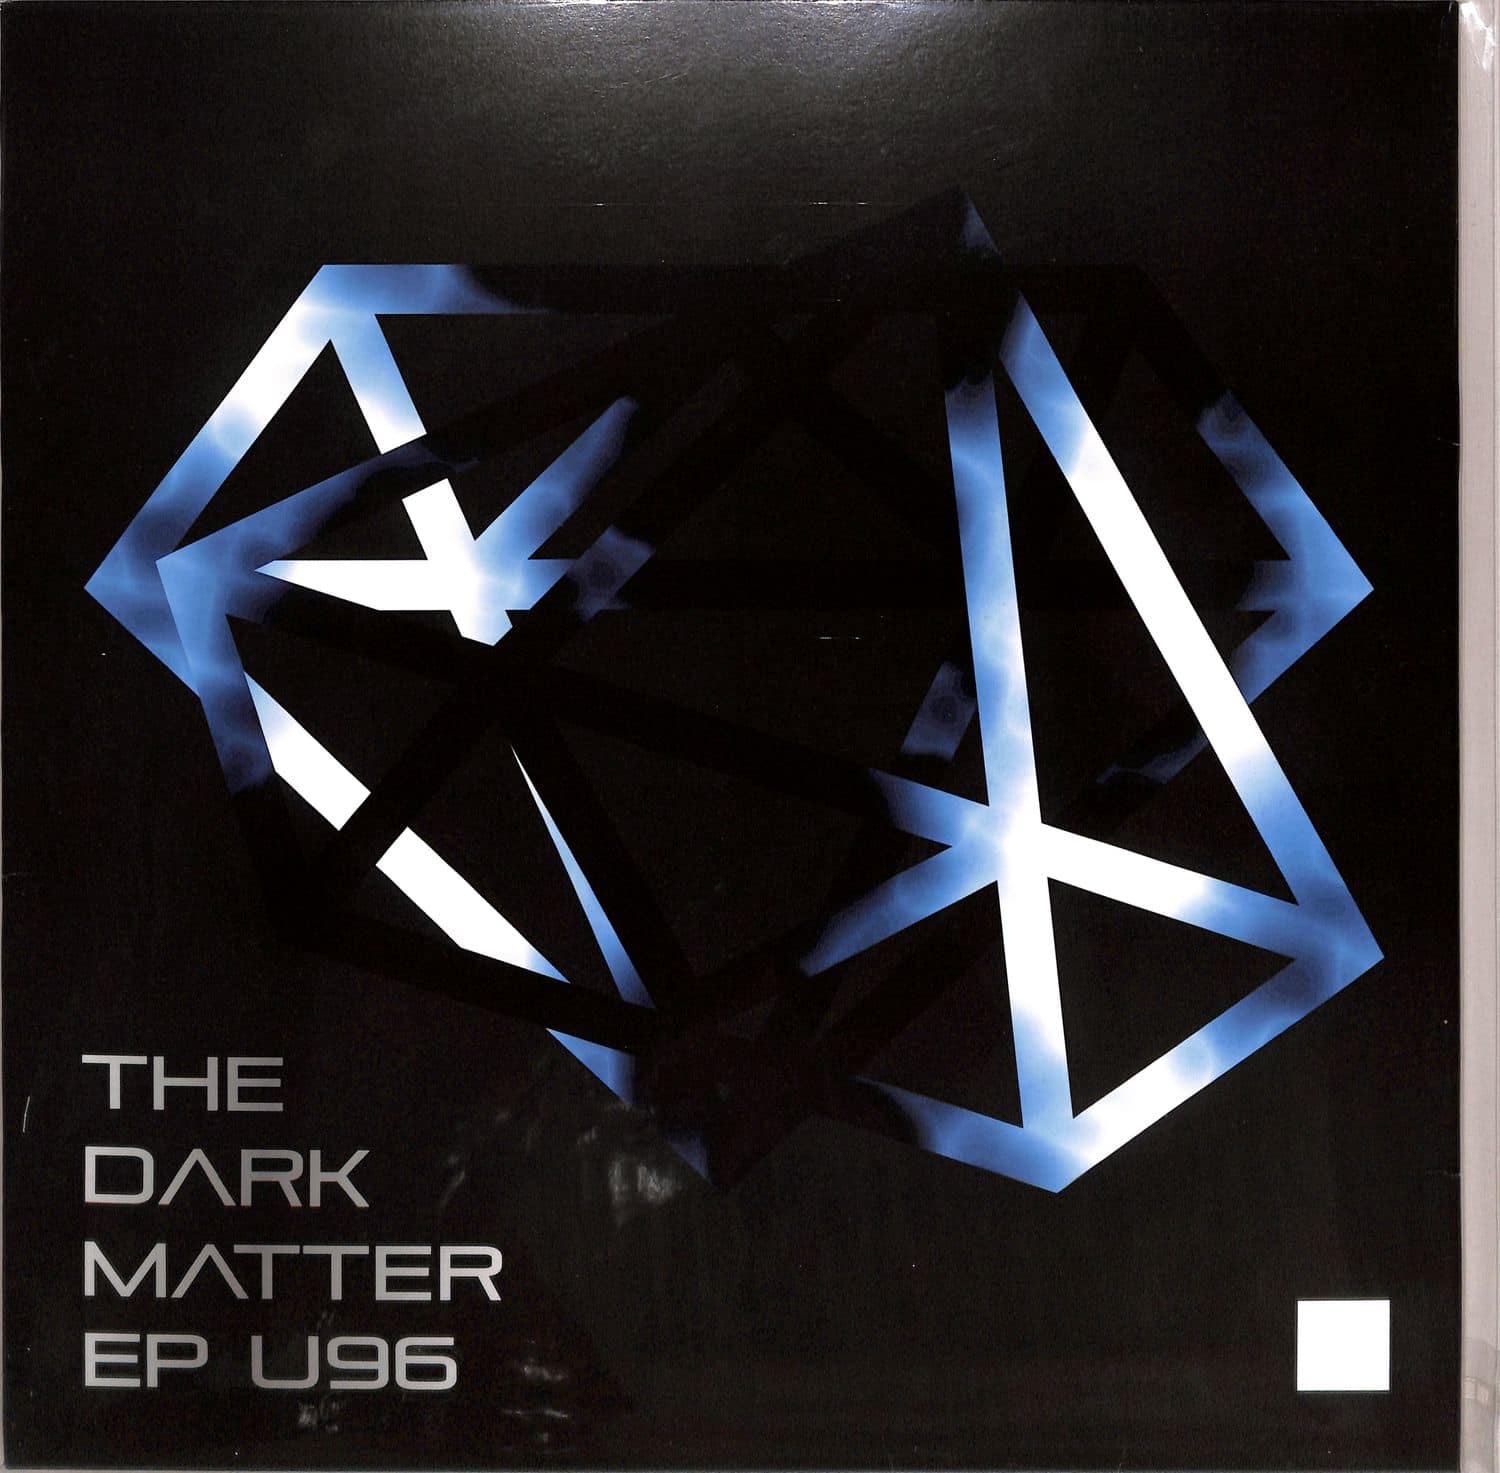 U96 - THE DARK MATTER EP